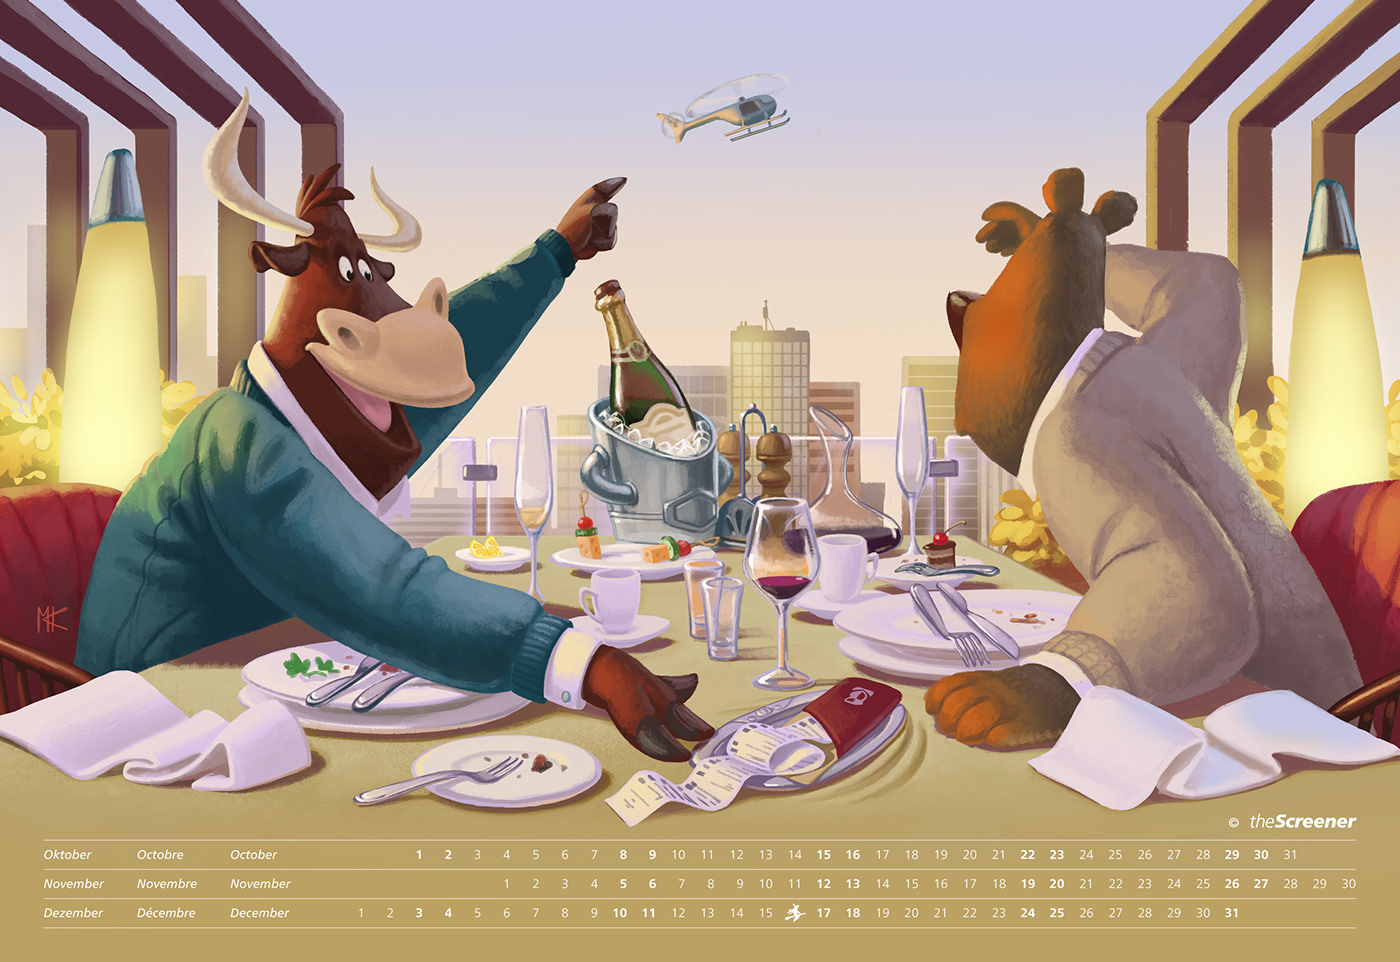 animals calendar cartoon digital illustration finance funny restaurant seasons